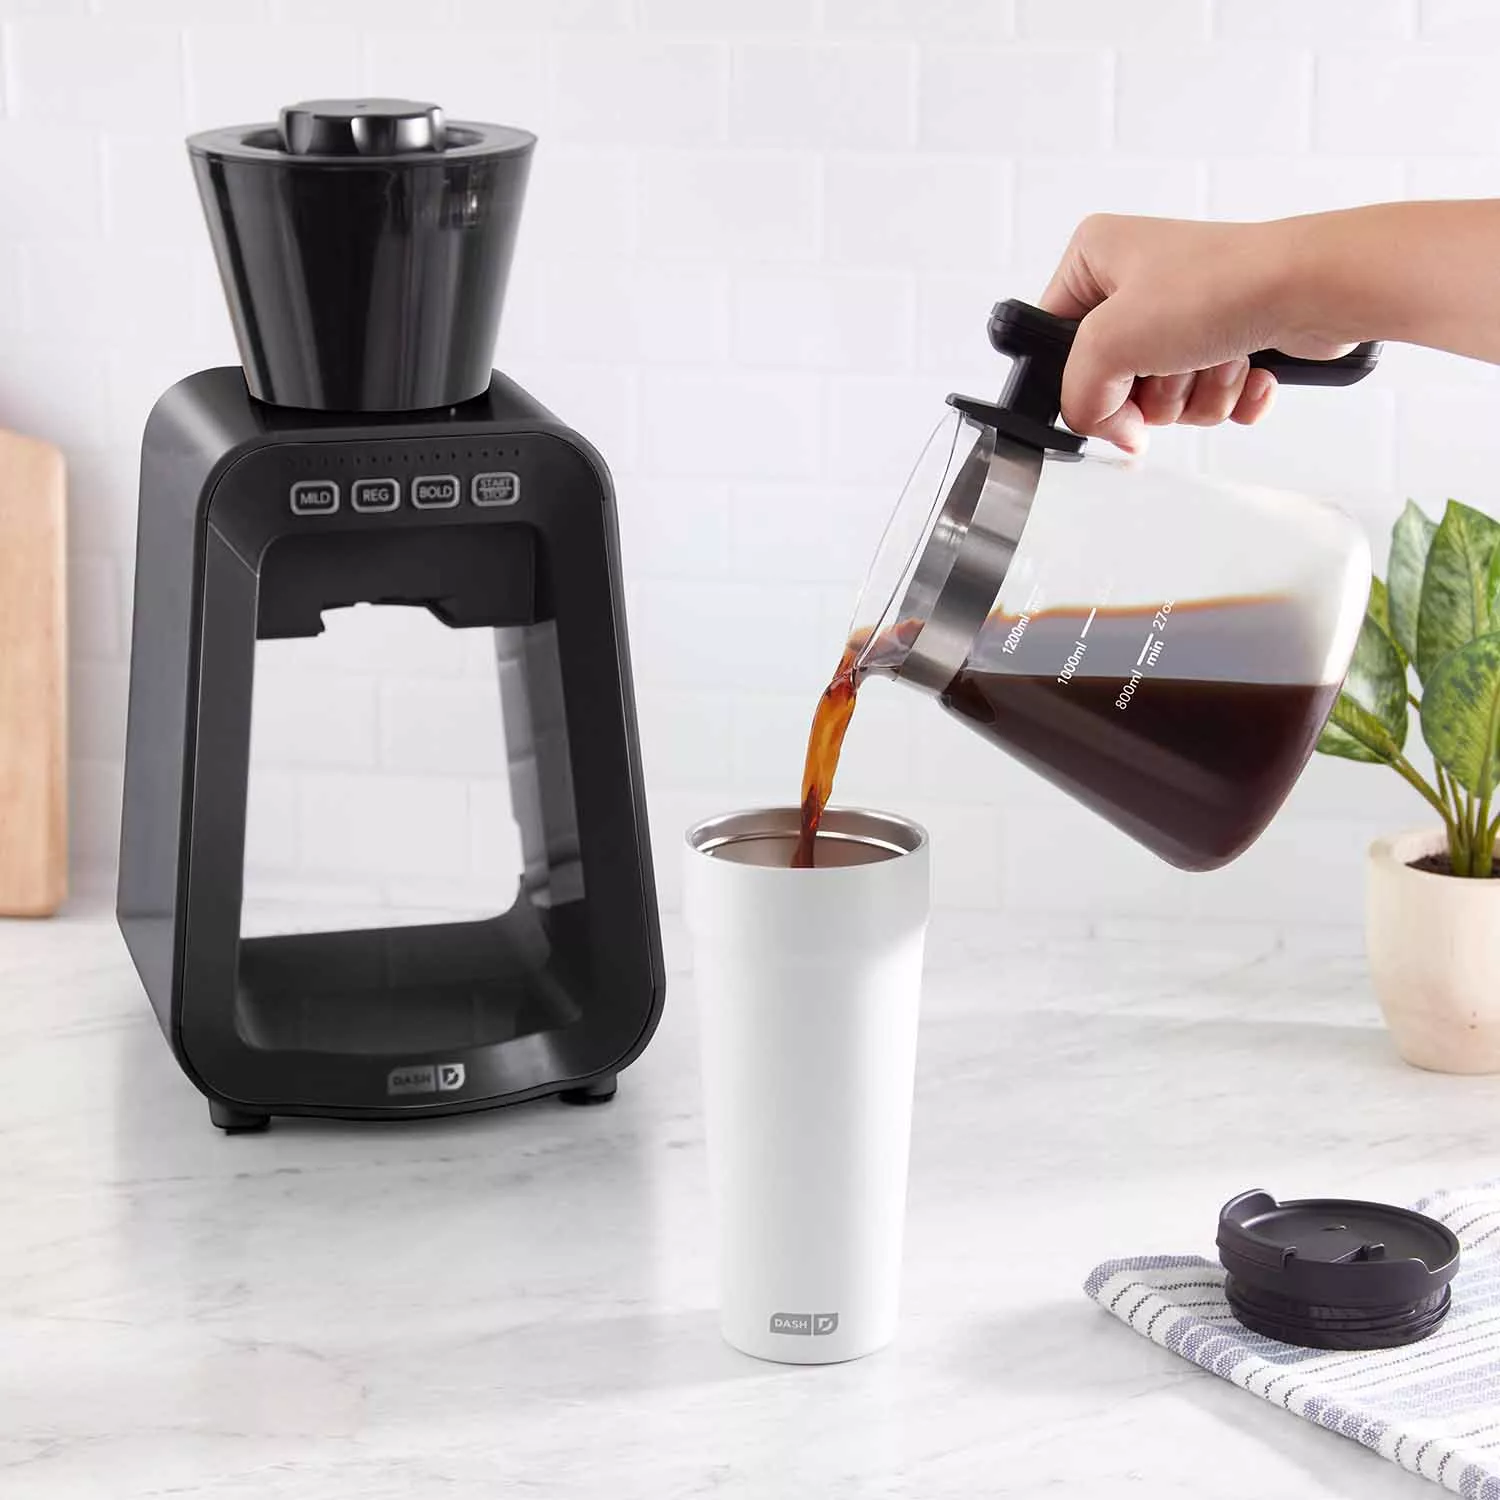 Rapid Cold Brew Coffee Maker – Dash